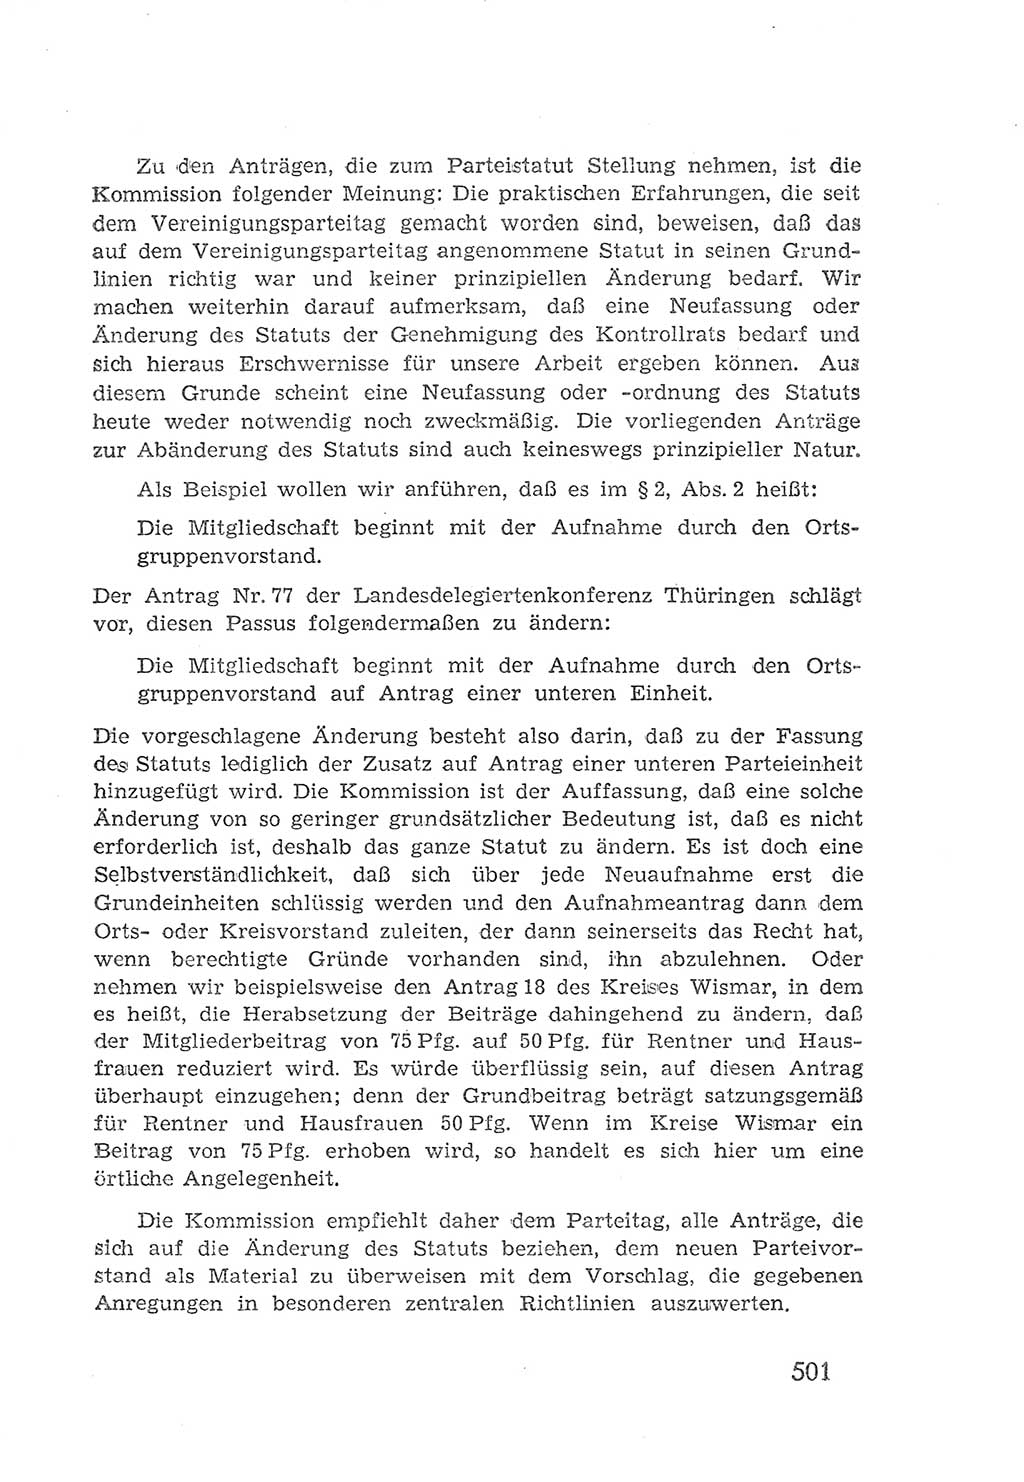 Protokoll der Verhandlungen des 2. Parteitages der Sozialistischen Einheitspartei Deutschlands (SED) [Sowjetische Besatzungszone (SBZ) Deutschlands] 1947, Seite 501 (Prot. Verh. 2. PT SED SBZ Dtl. 1947, S. 501)